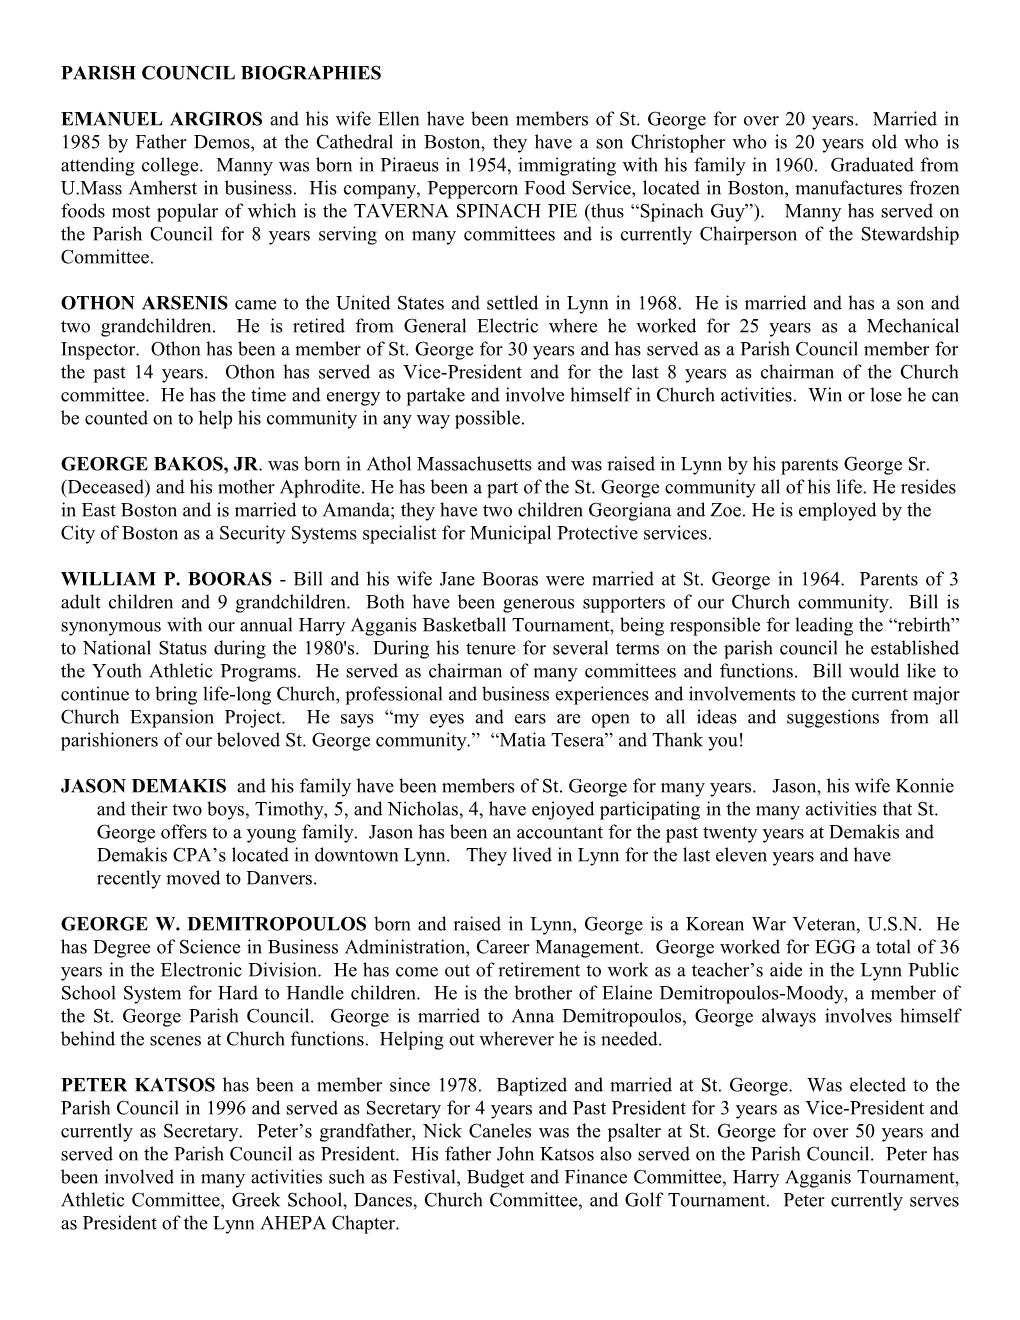 Parish Council Biographies